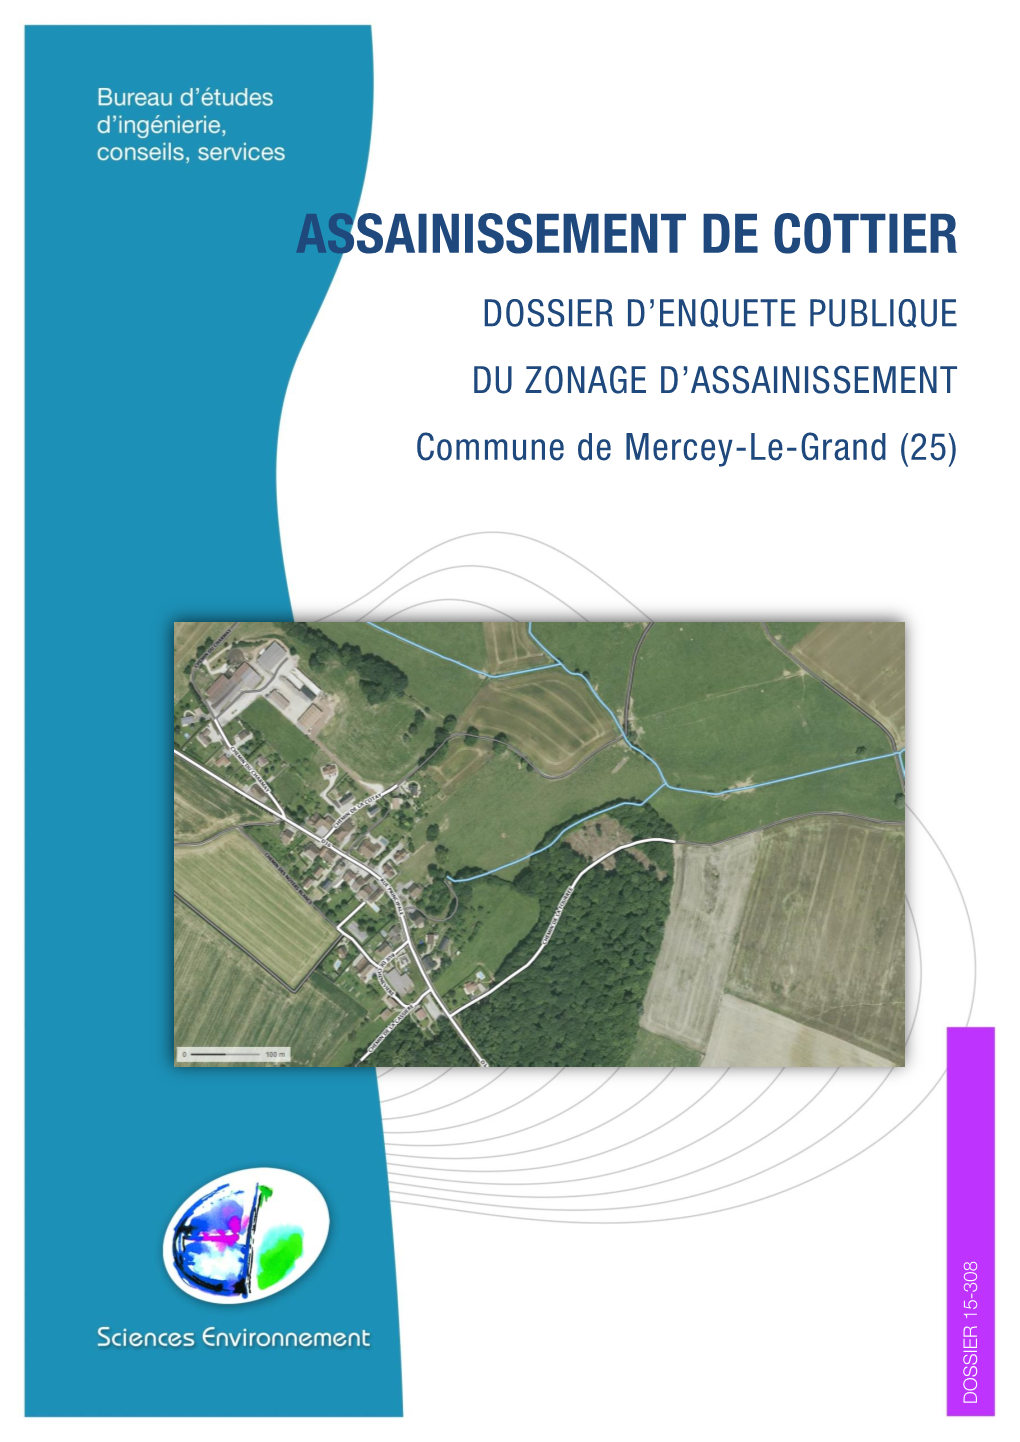 ASSAINISSEMENT DE COTTIER DOSSIER D’ENQUETE PUBLIQUE DU ZONAGE D’ASSAINISSEMENT Commune De Mercey-Le-Grand (25)